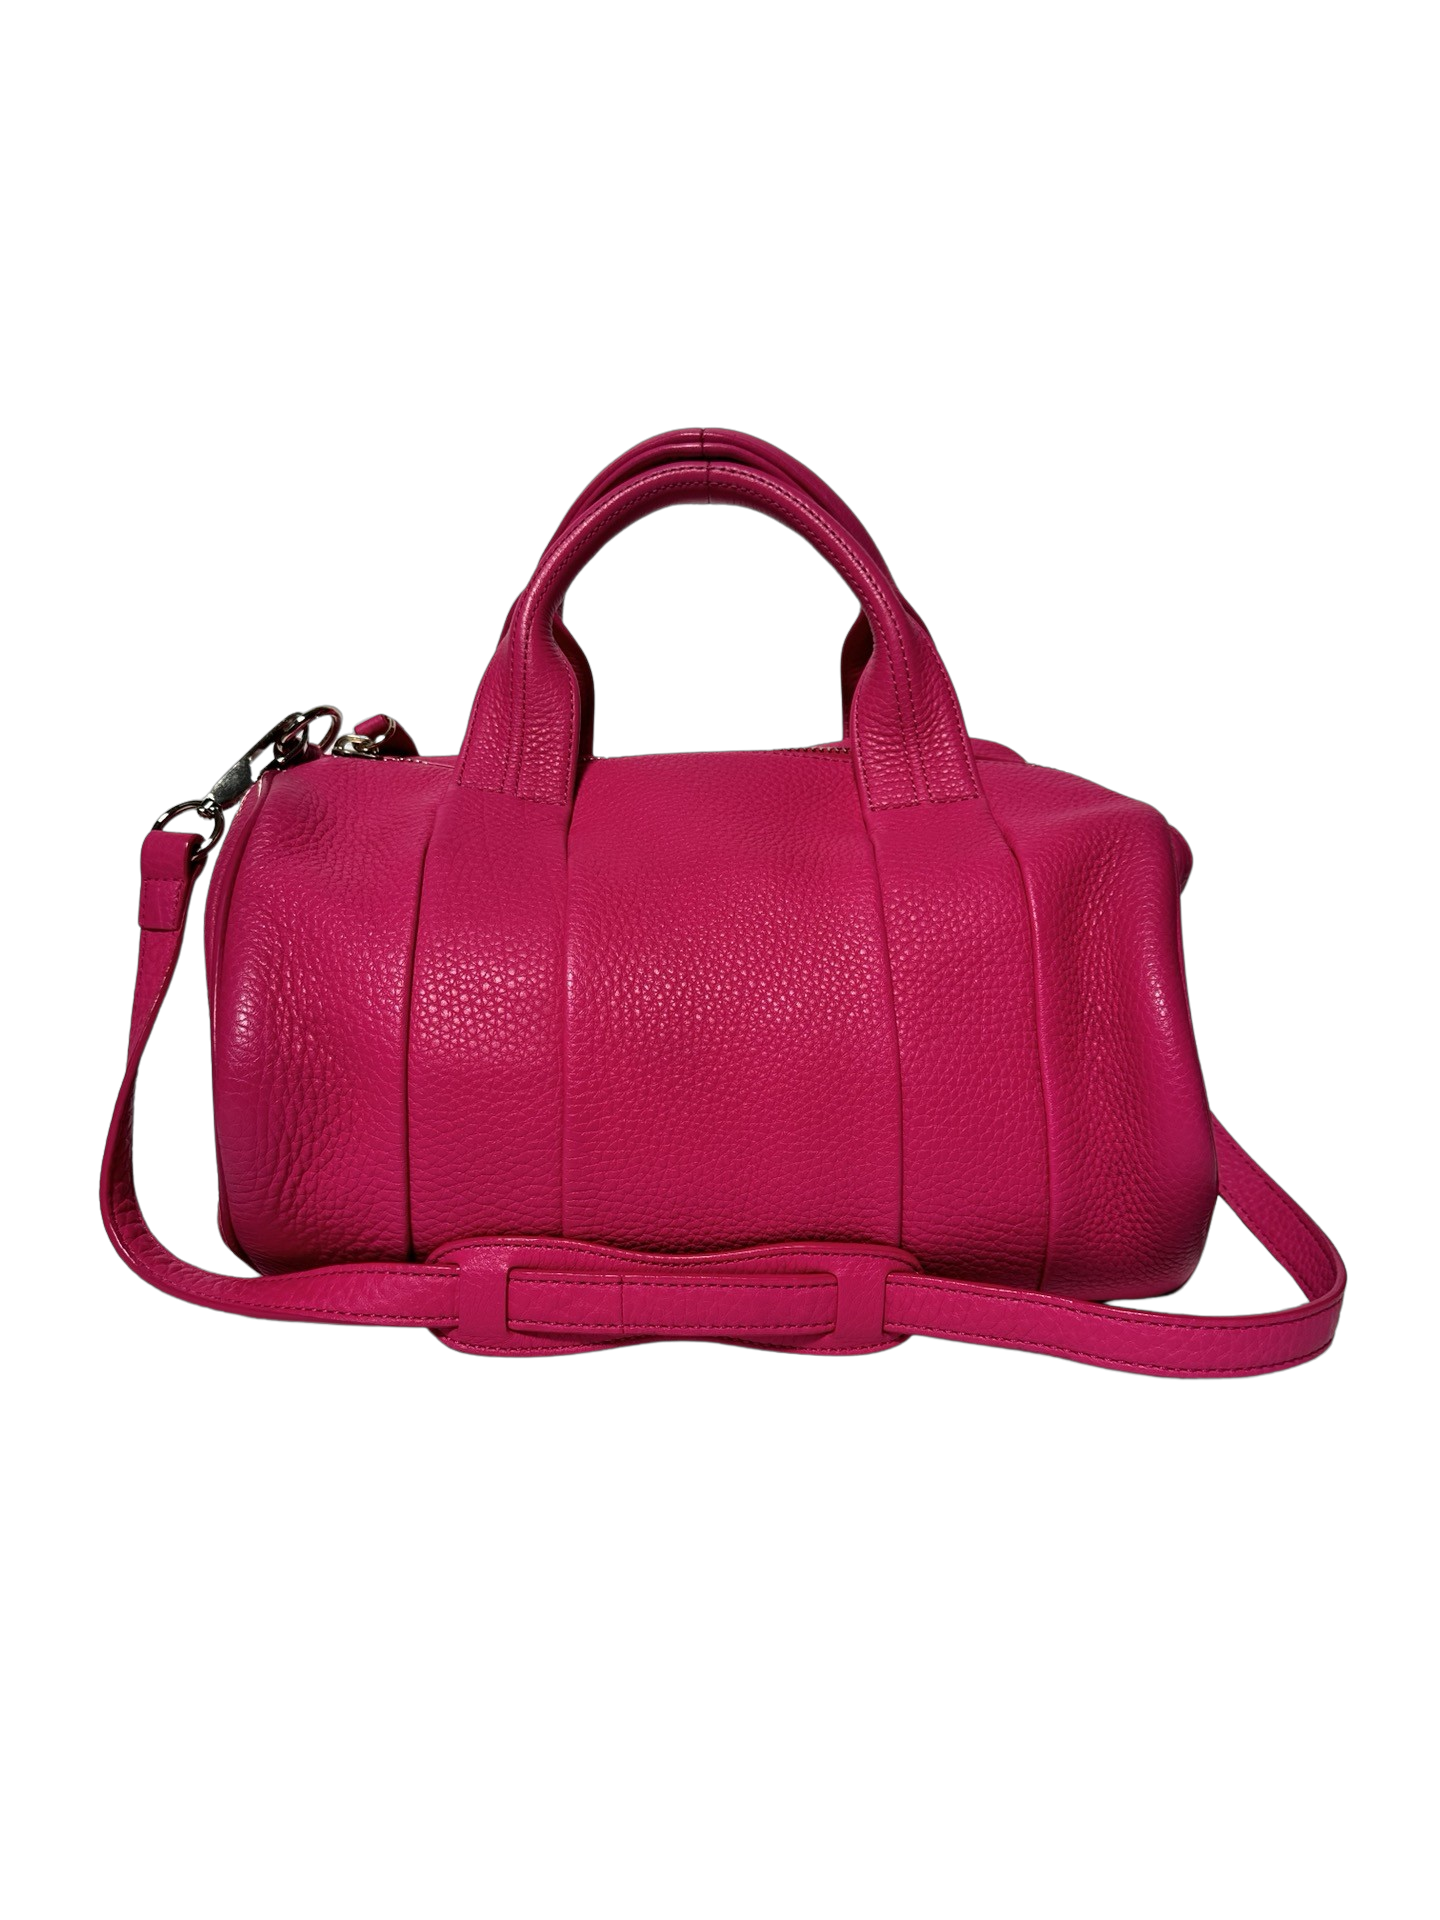 Alexander Wang Rocco Leather Handbag